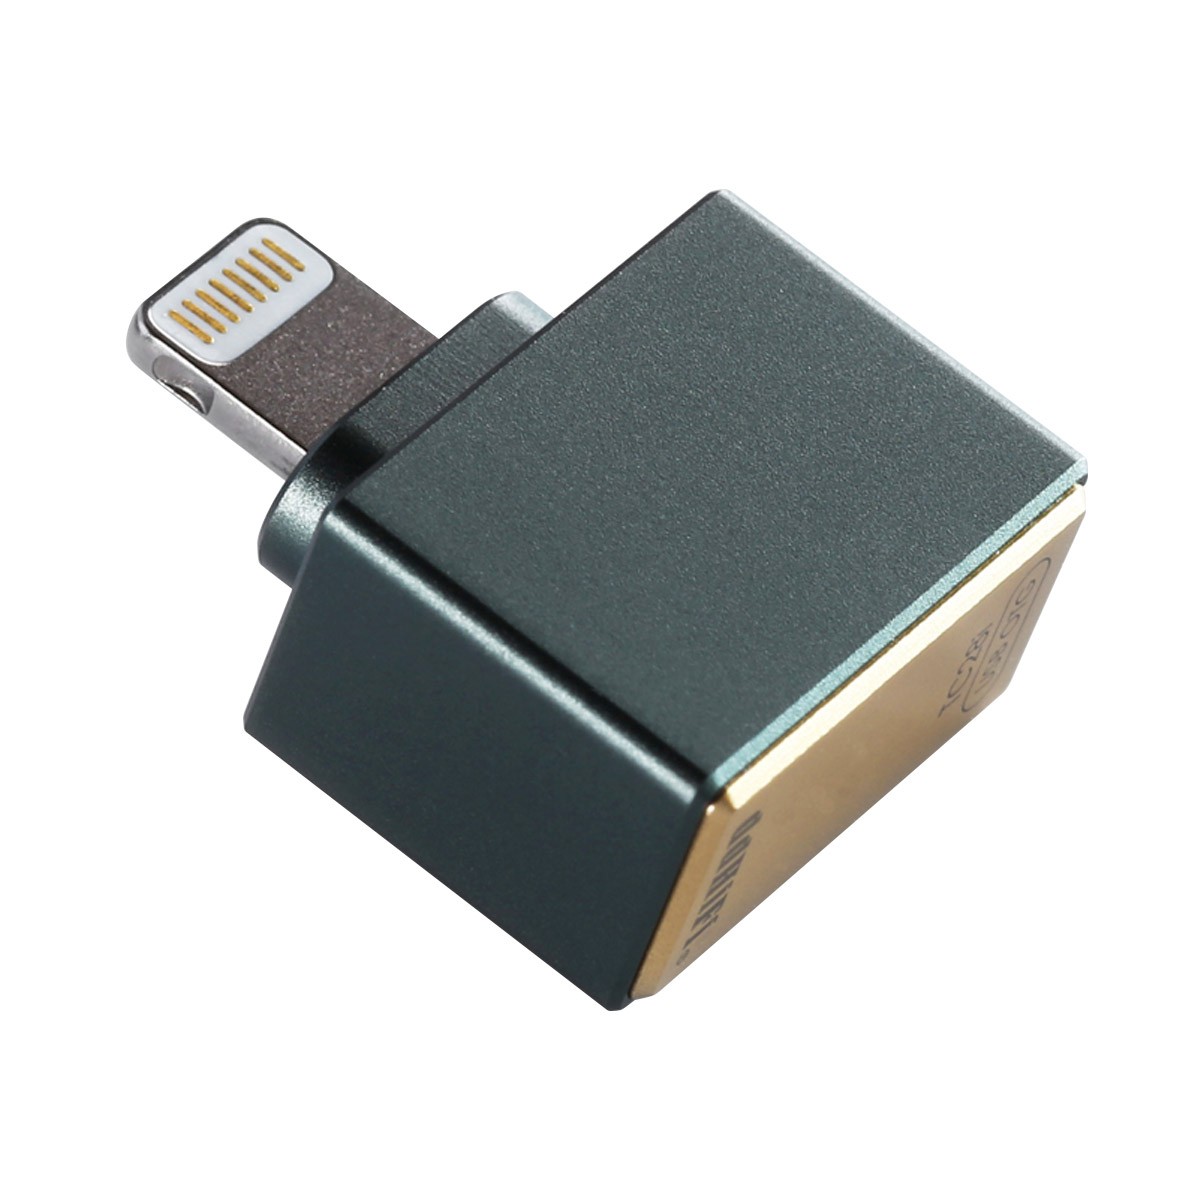 CABLING® USB-C Adaptateur, USB Type C (mâle) vers lightning femelle  Adaptateur Compatible avec appareil Apple, 5 Gbit/s de synchronisation de  données